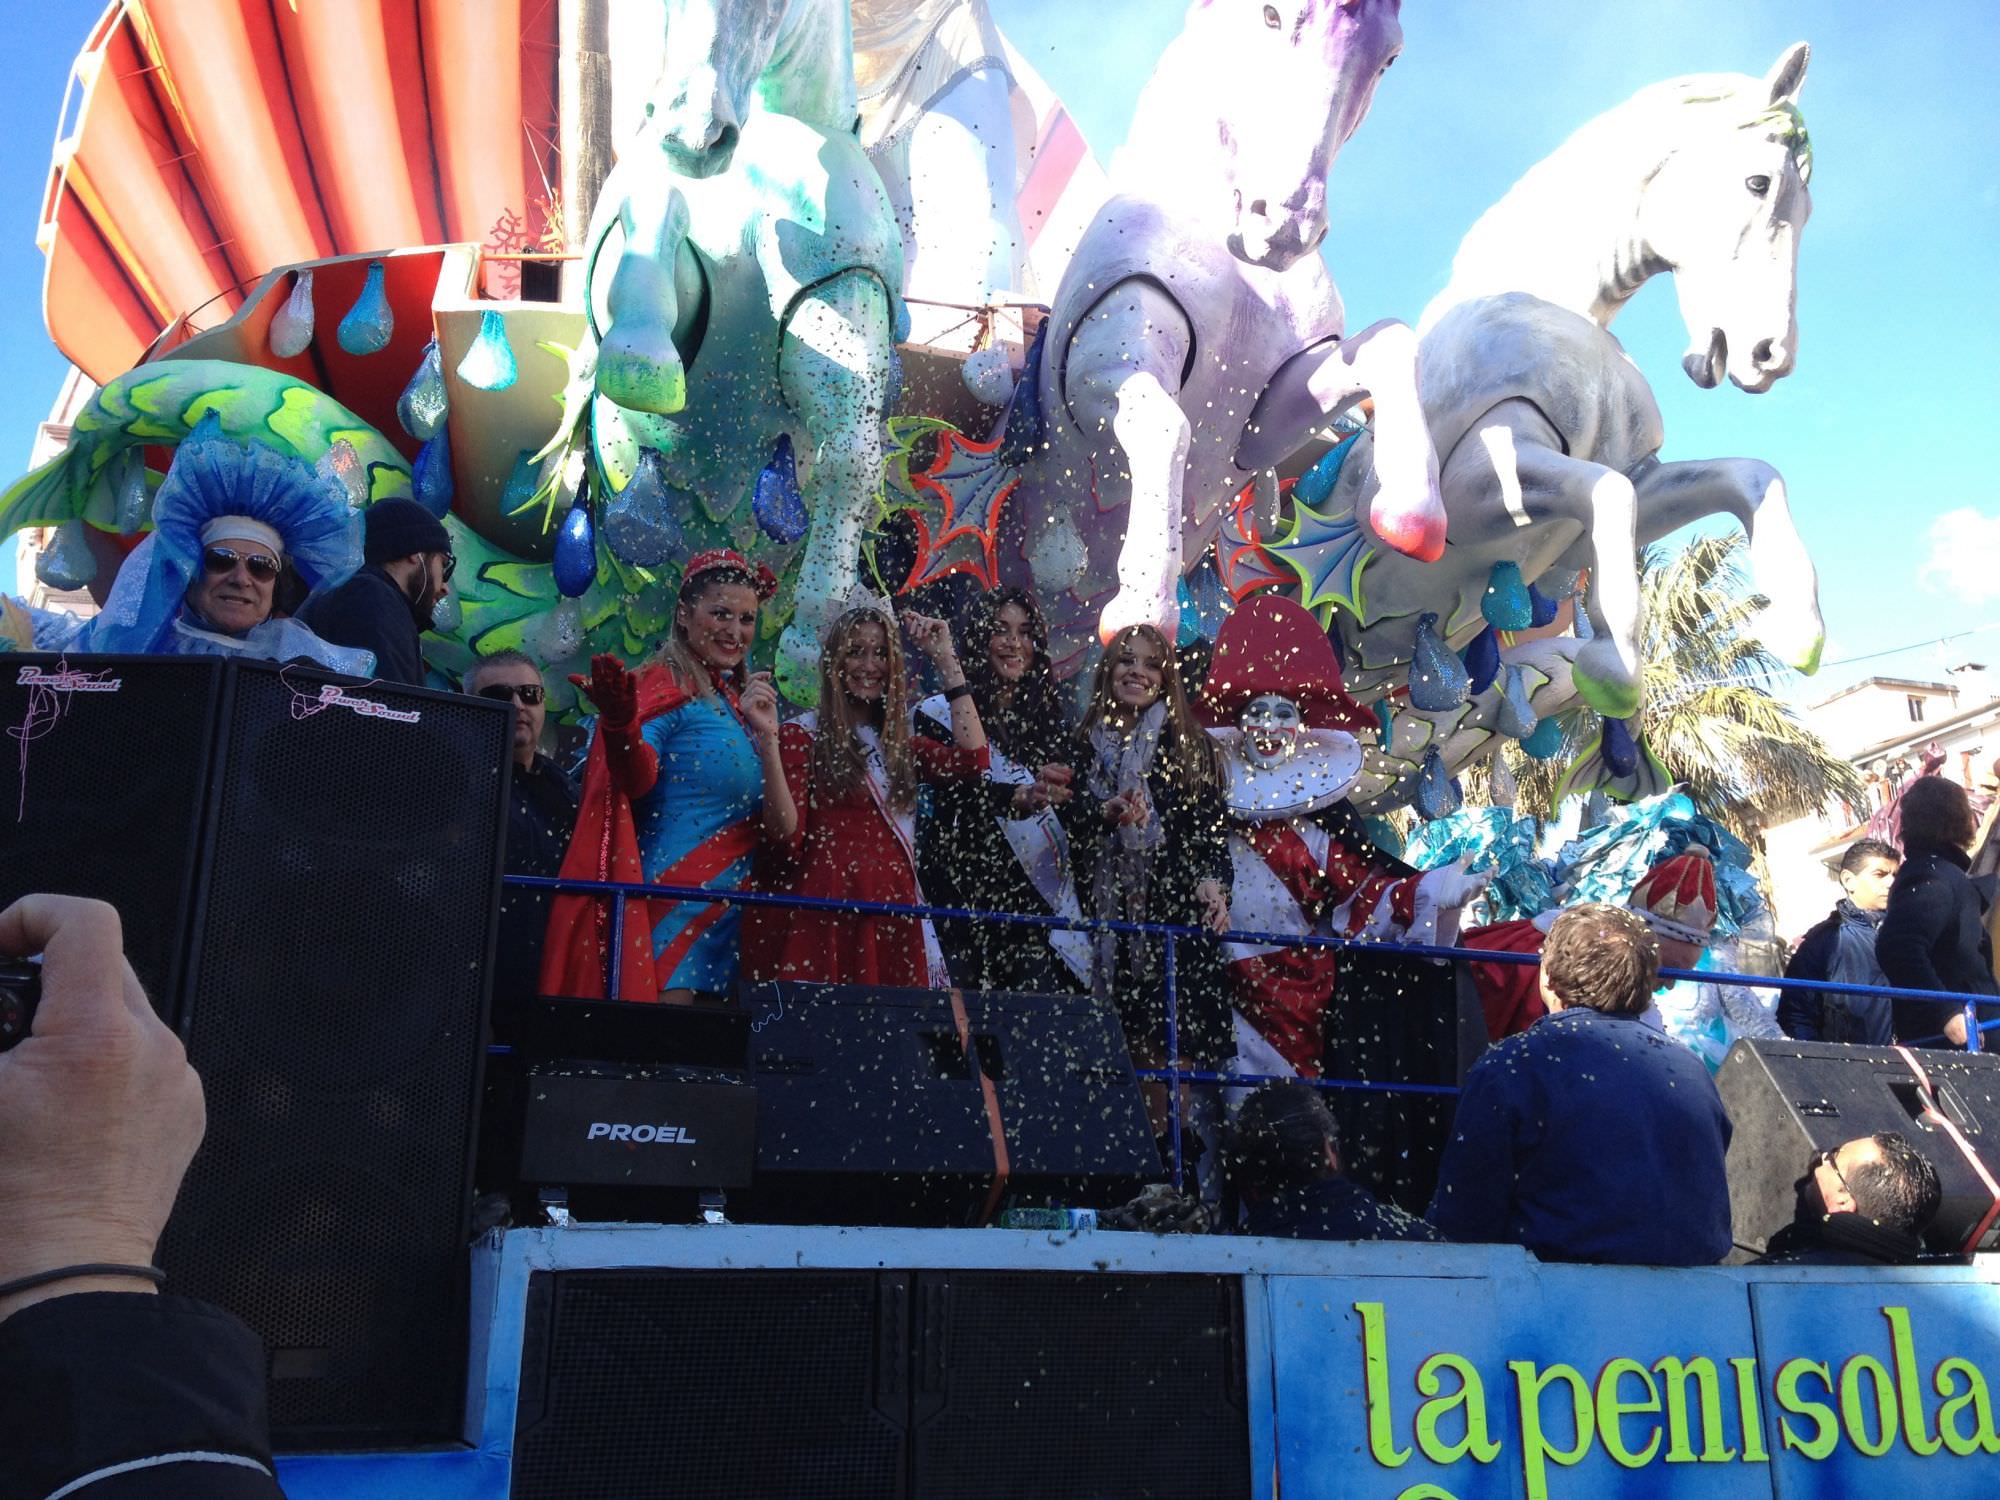 Presentati i bozzetti del Carnevale di Viareggio 2015, oltre 30 opere in concorso